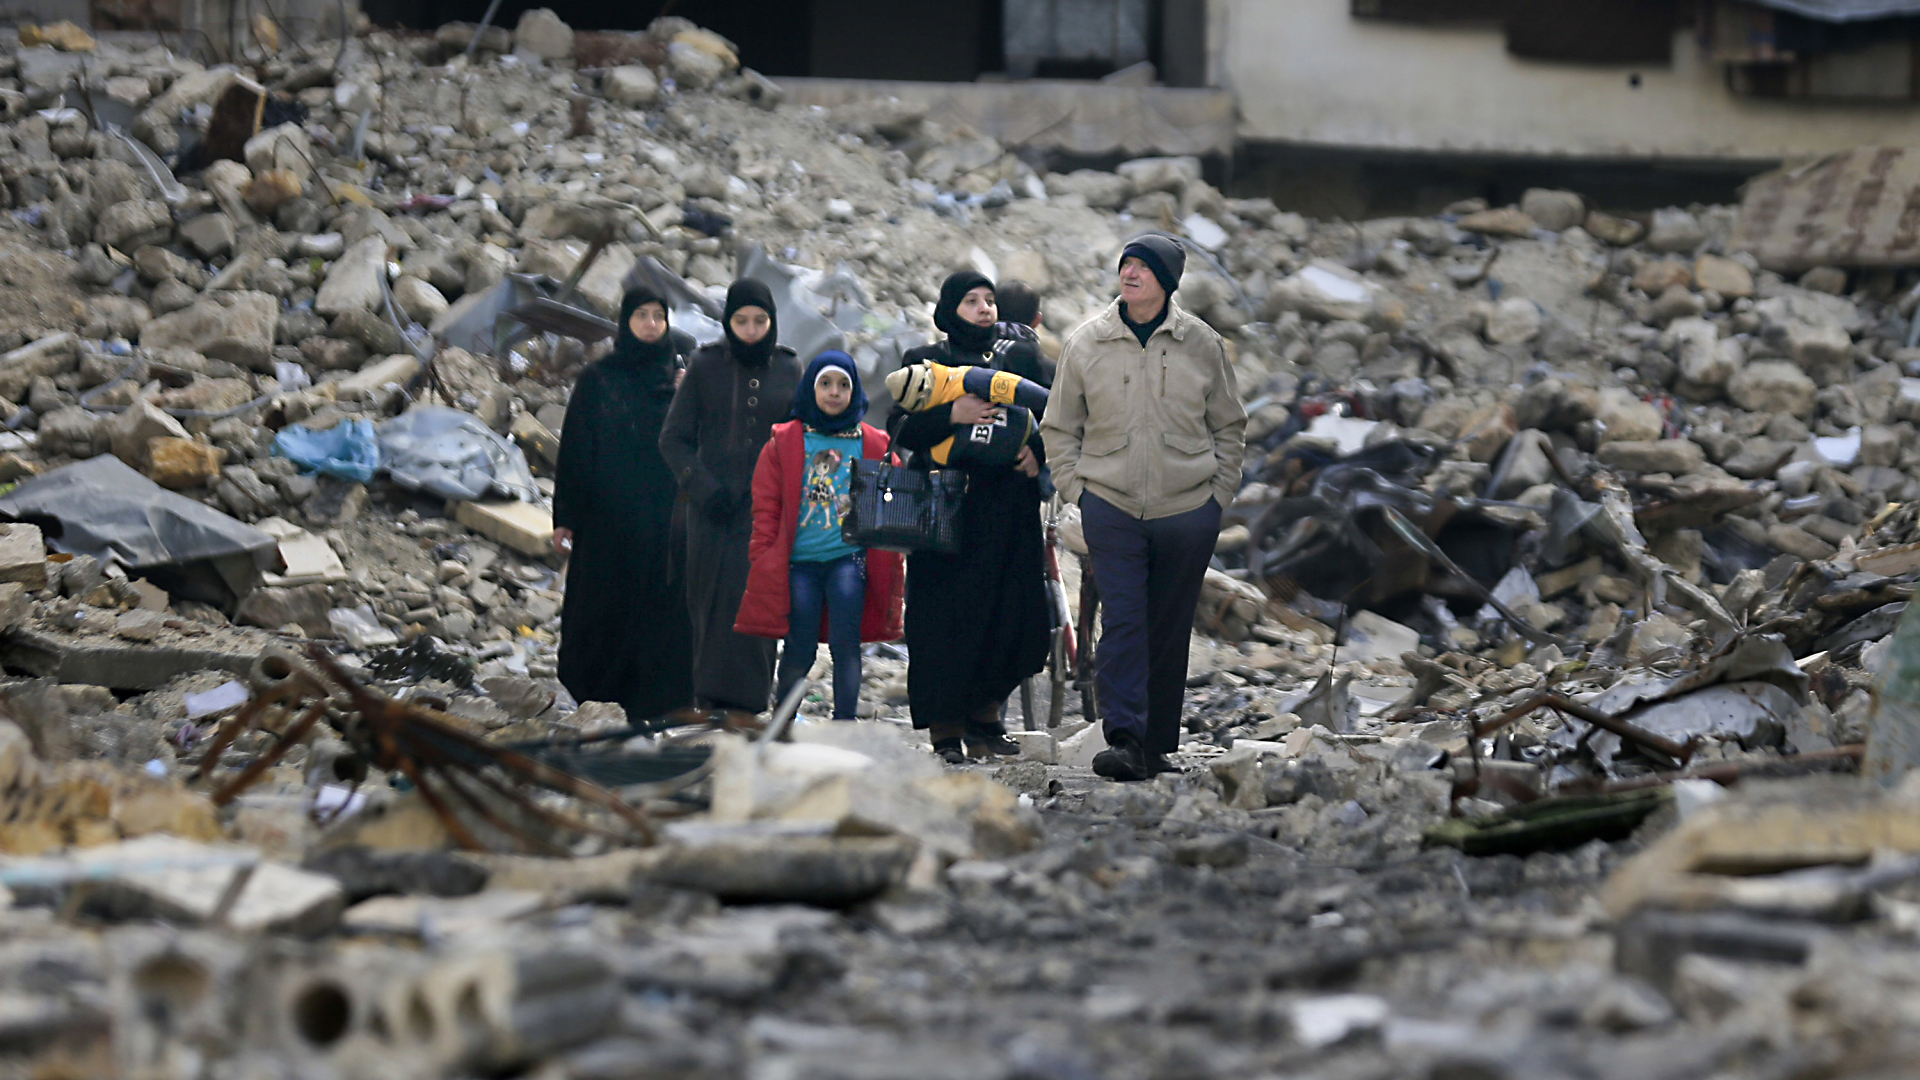 Anfang des Jahres in Aleppo. Eine Gruppe von Menschen betrachtet die Zerstörungen in der Stadt.